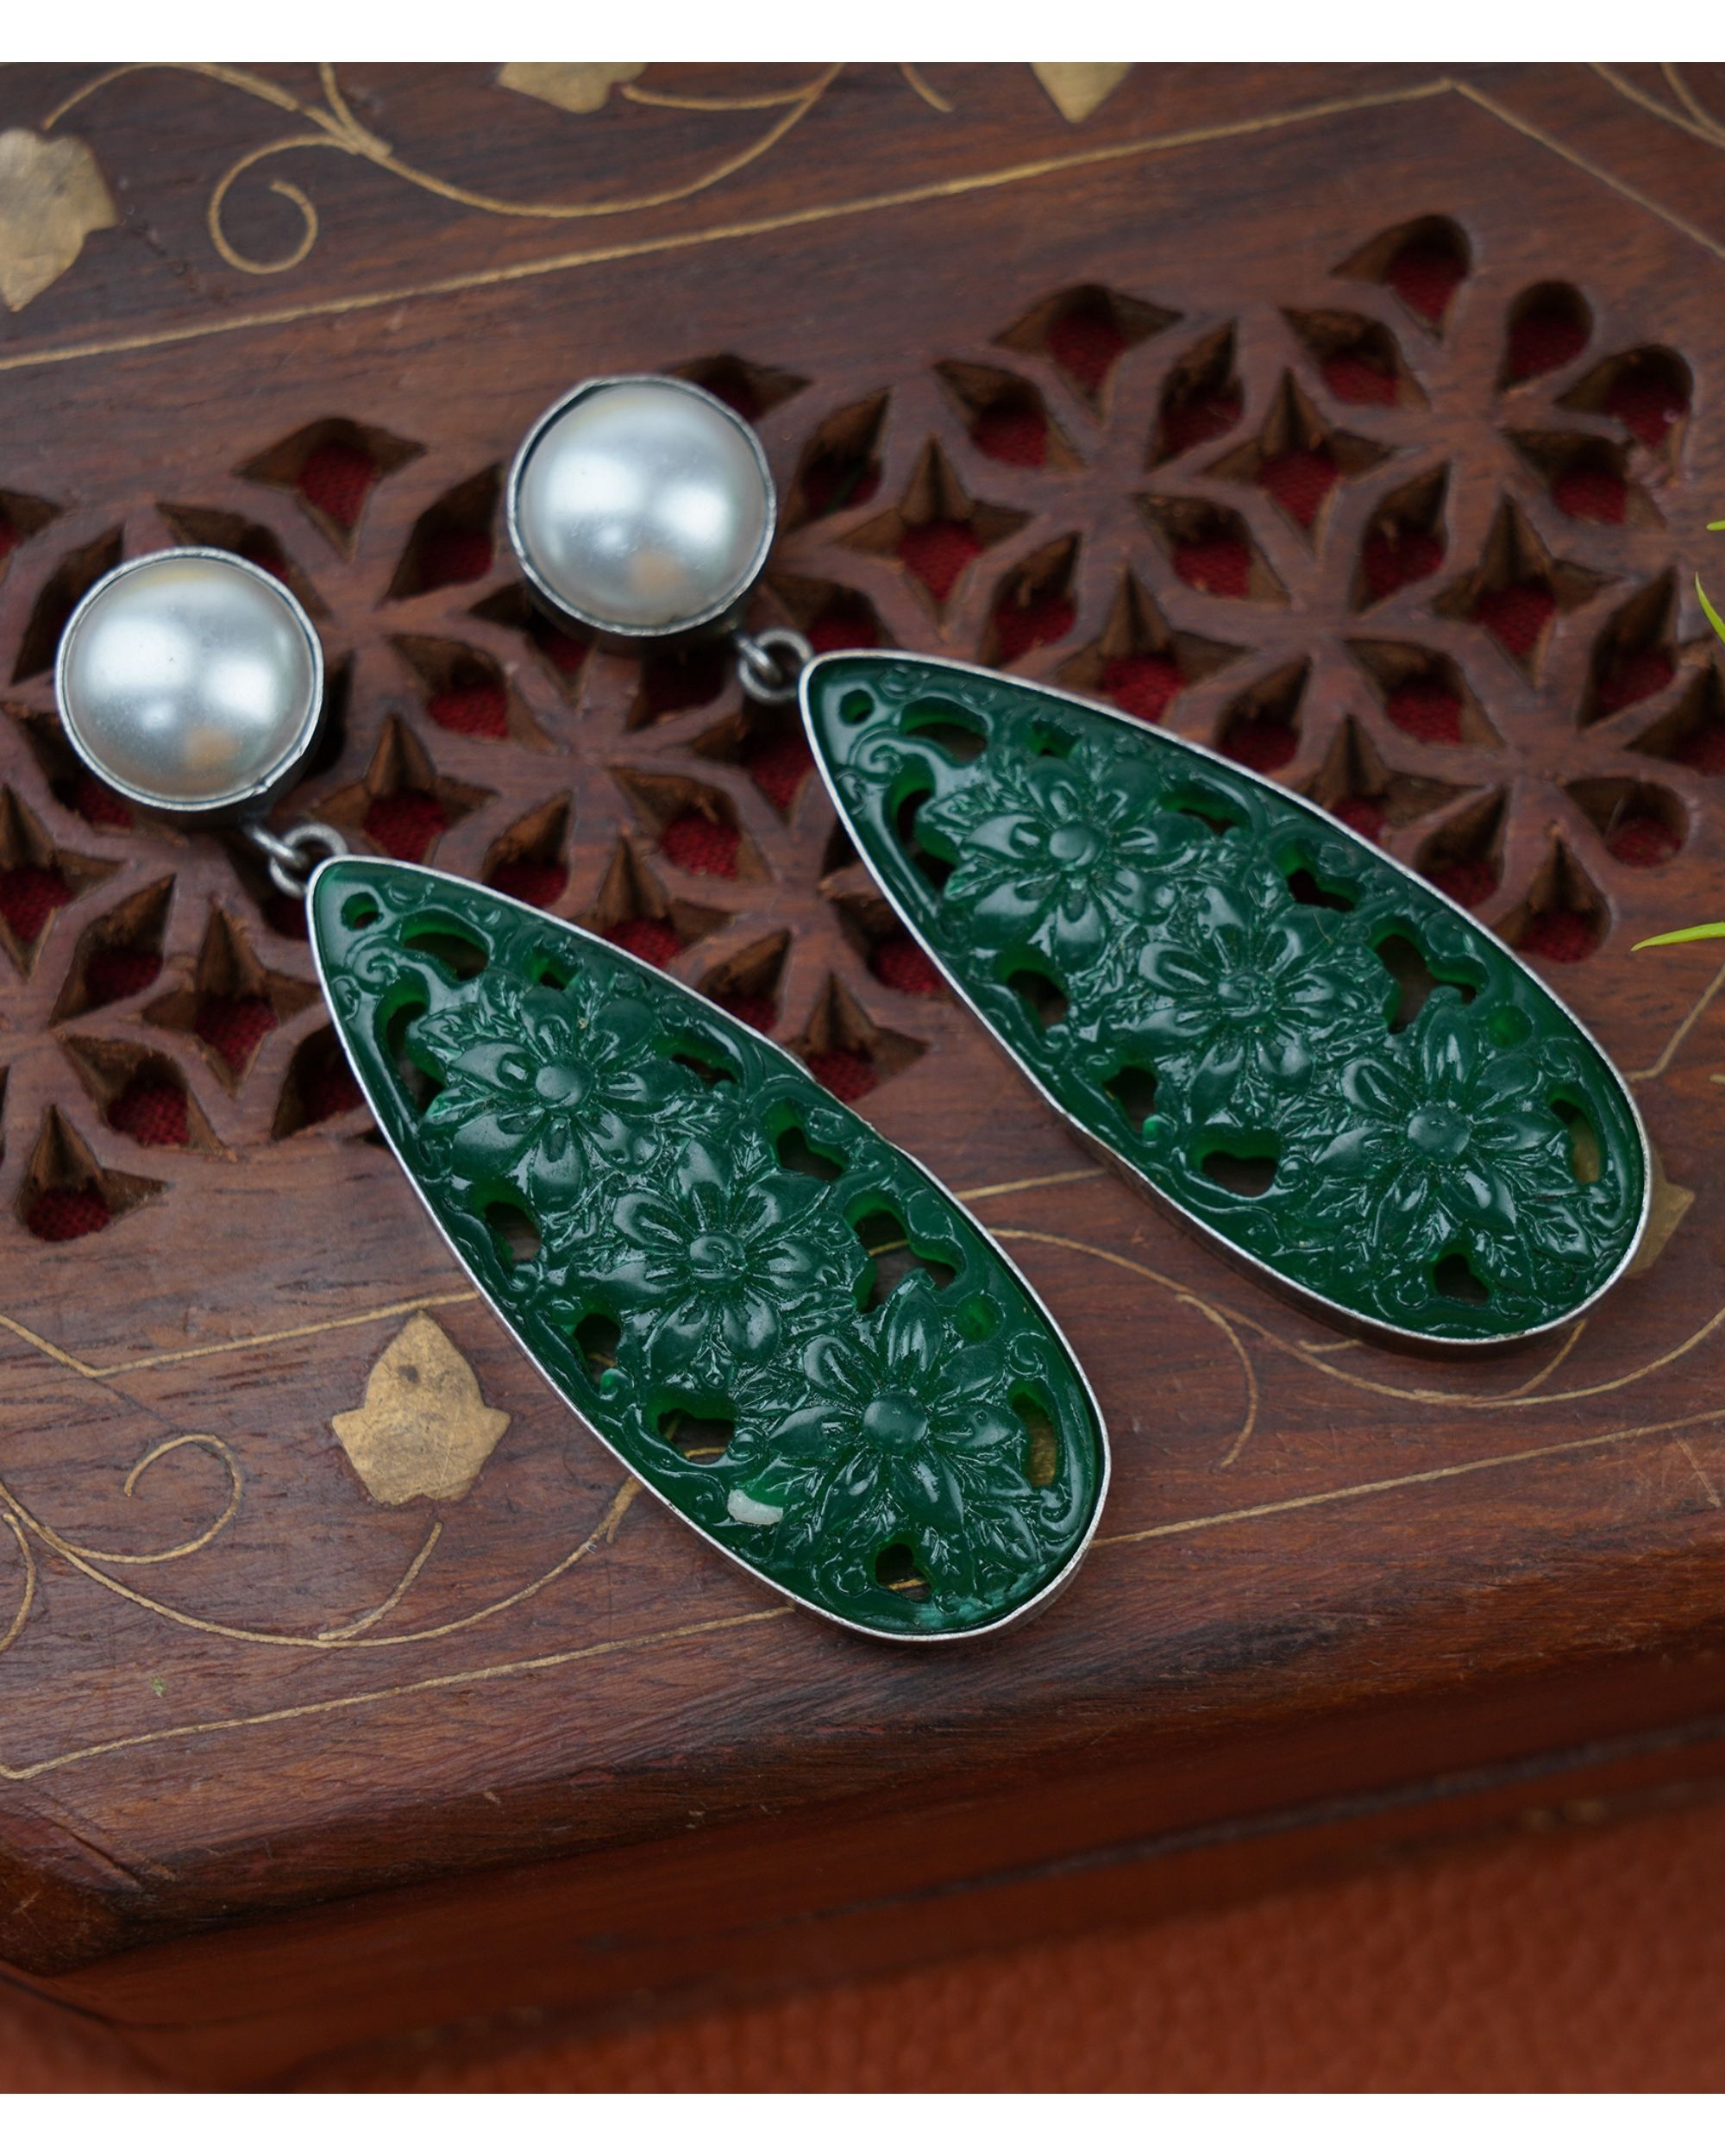 Green drop tale earrings